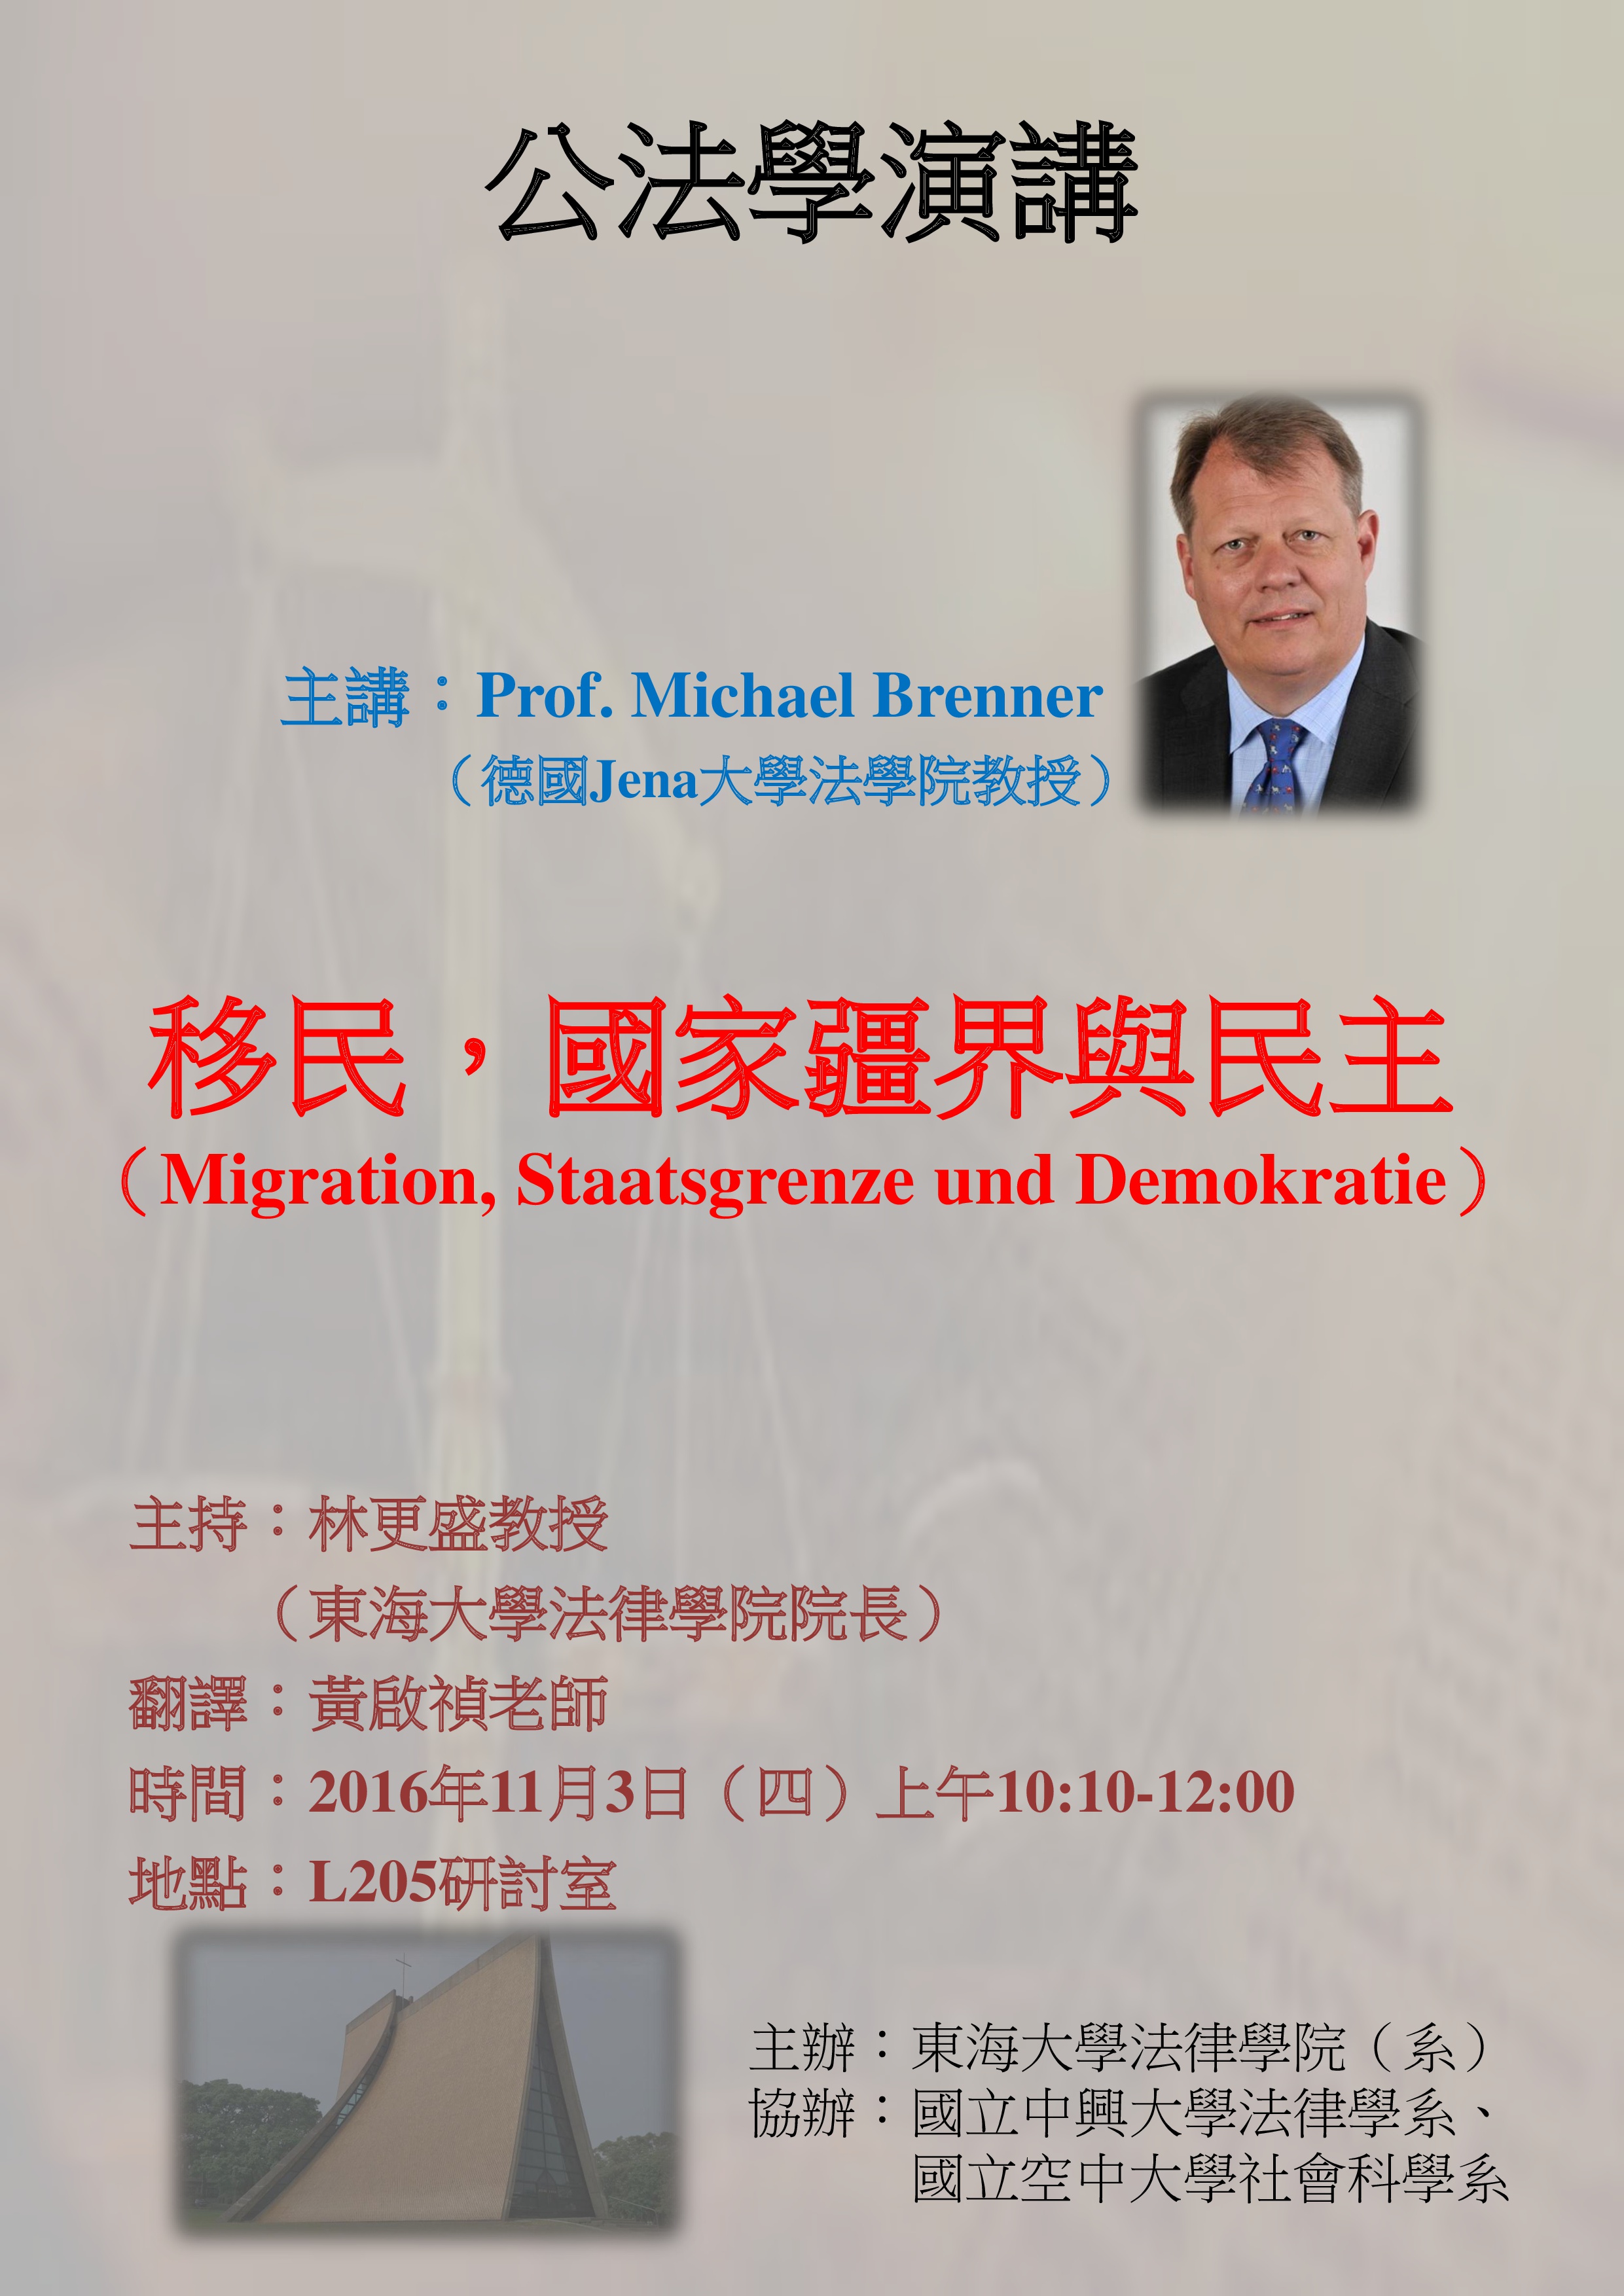 105.11.3東海大學演講主題： 移民、國界與民主性